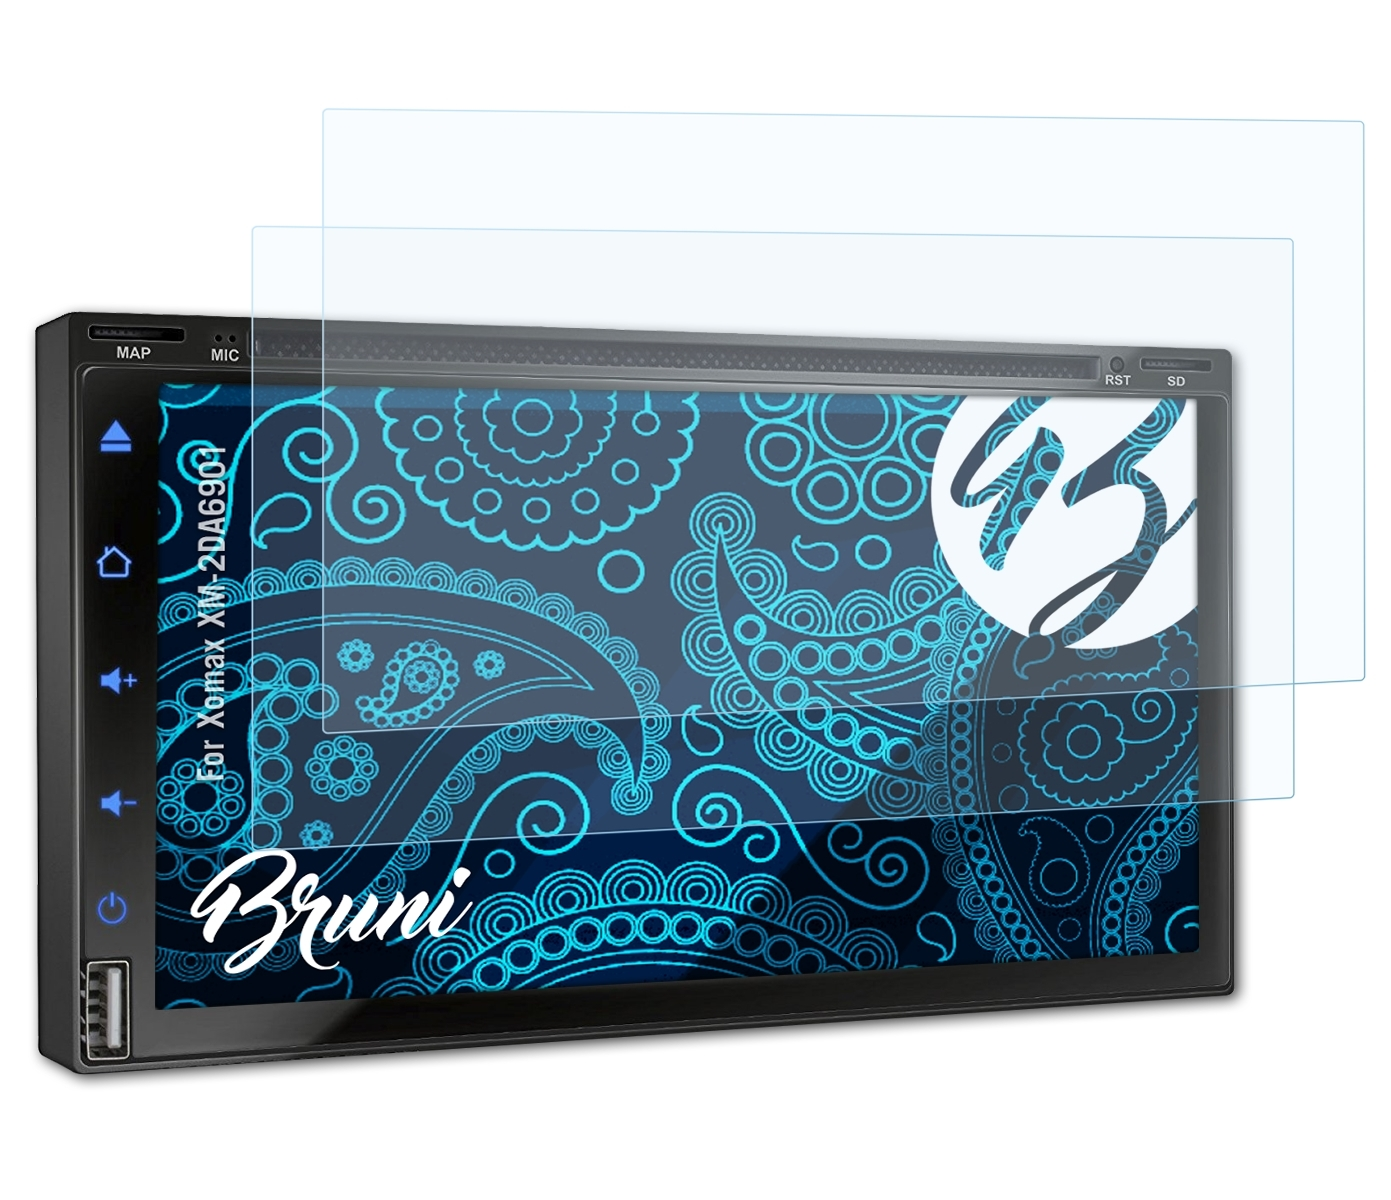 BRUNI 2x Basics-Clear Schutzfolie(für Xomax XM-2DA6901)